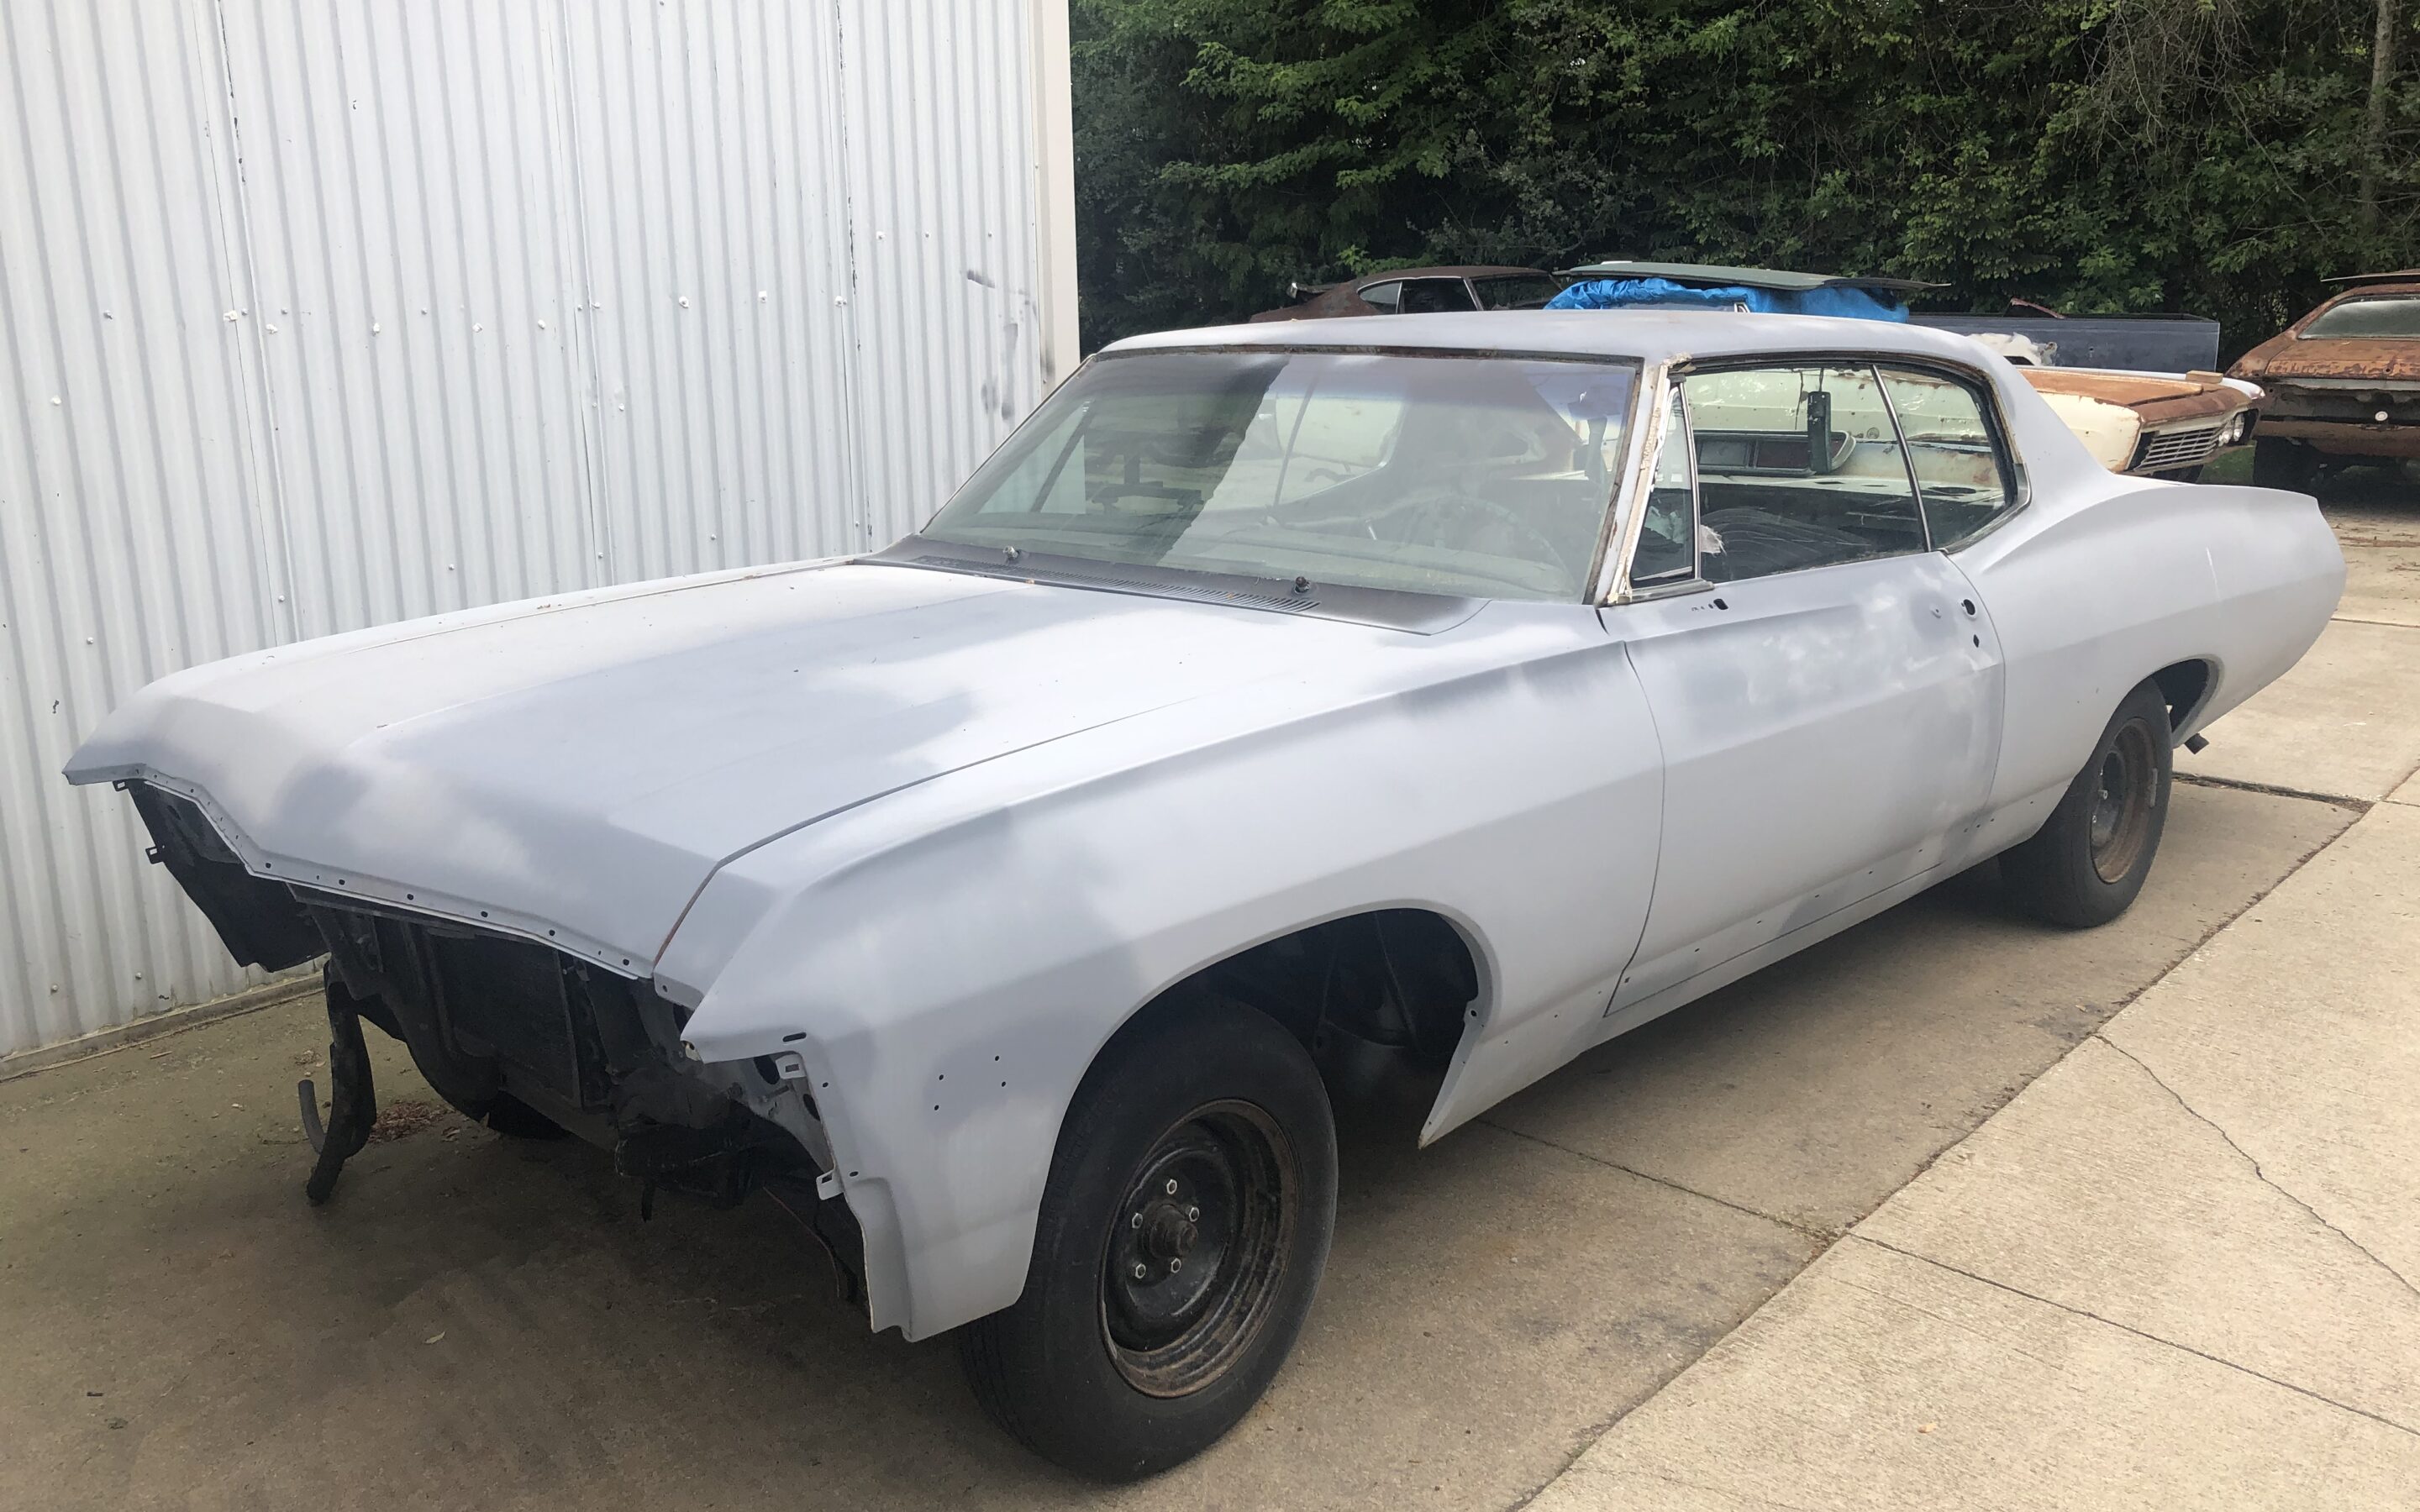 1967 Caprice 2 Door $4500 – No Engine